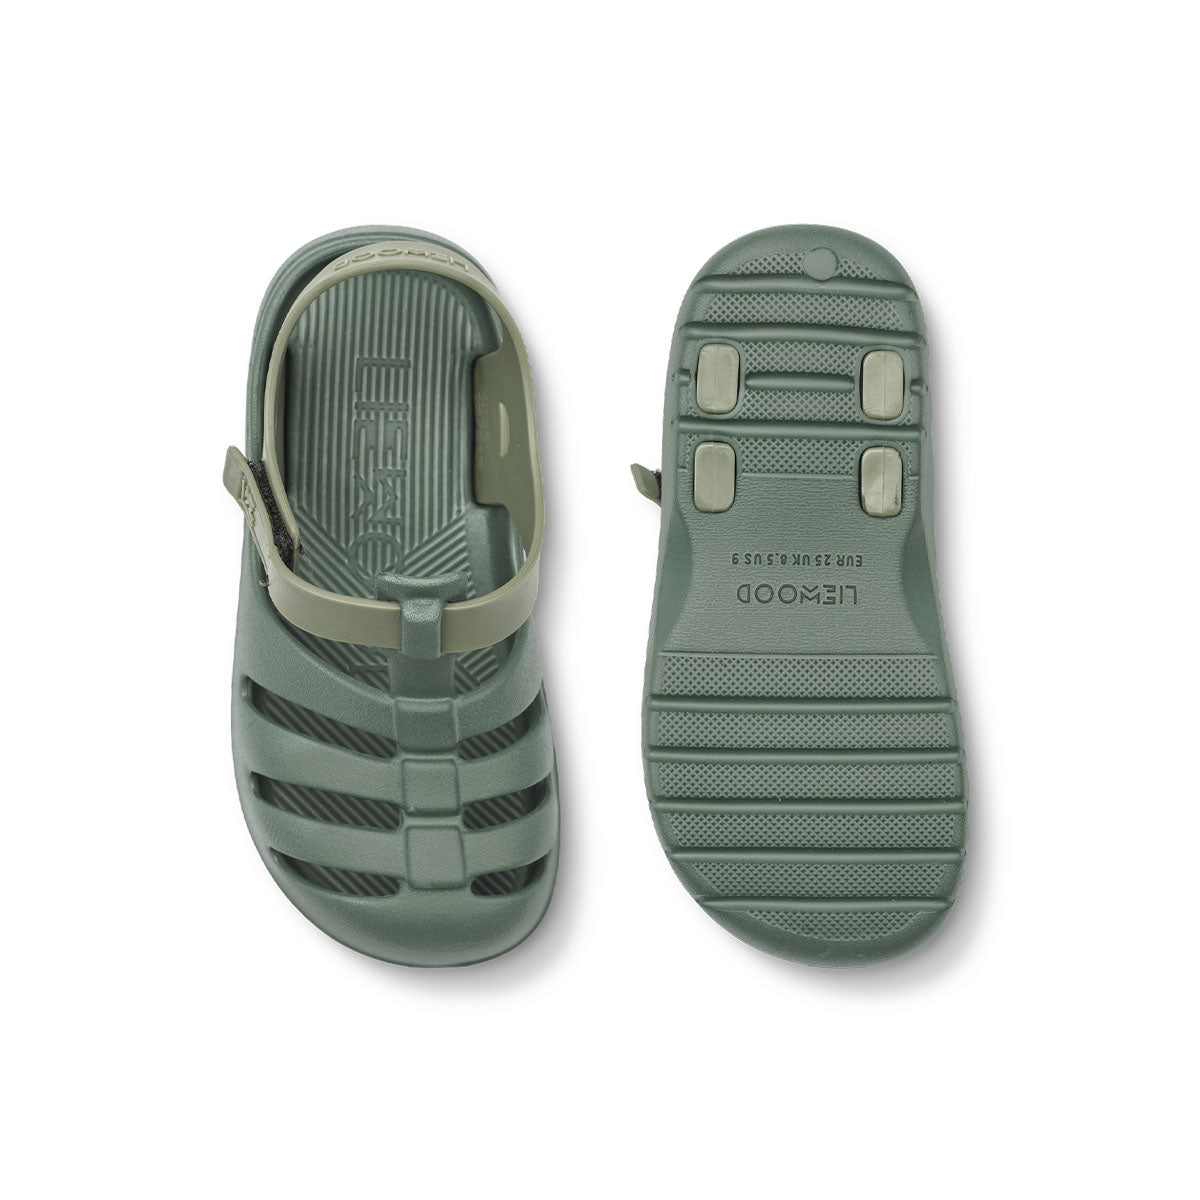 Ben je op zoek naar praktische én leuk uitziende sandalen? Dan zijn deze beau sandalen van Liewood in de kleur tea/faune green ideaal! Deze groene waterschoenen zijn namelijk enorm comfortabel, dankzij het zachte en lichtgewicht materiaal, maar zien er ook stijlvol uit. VanZus